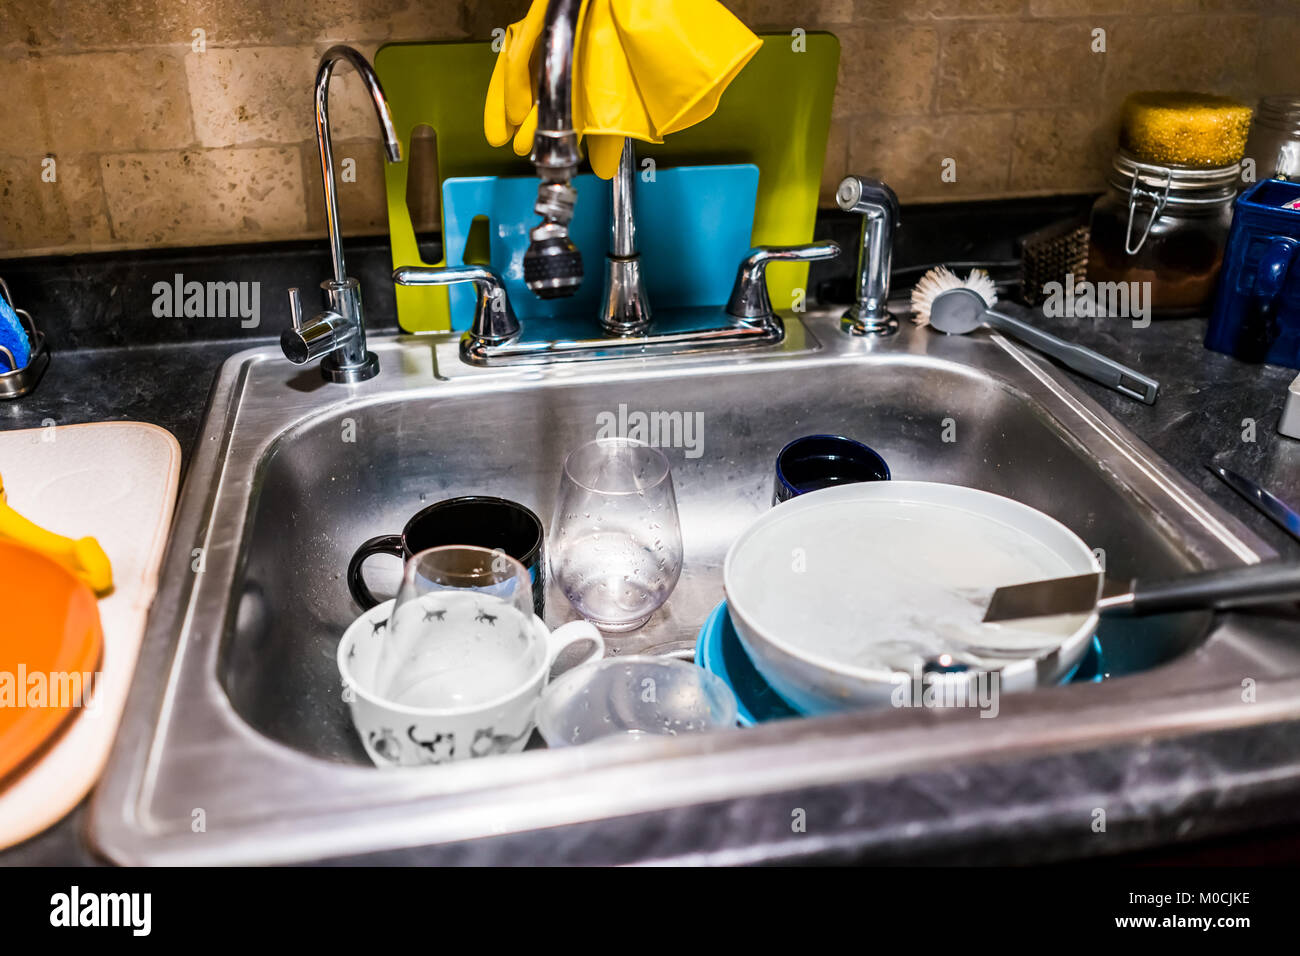 Primo piano dei piatti sporchi nel lavello in acciaio inox cucina per la pulizia di utensili, taglieri, muro di mattoni Foto Stock